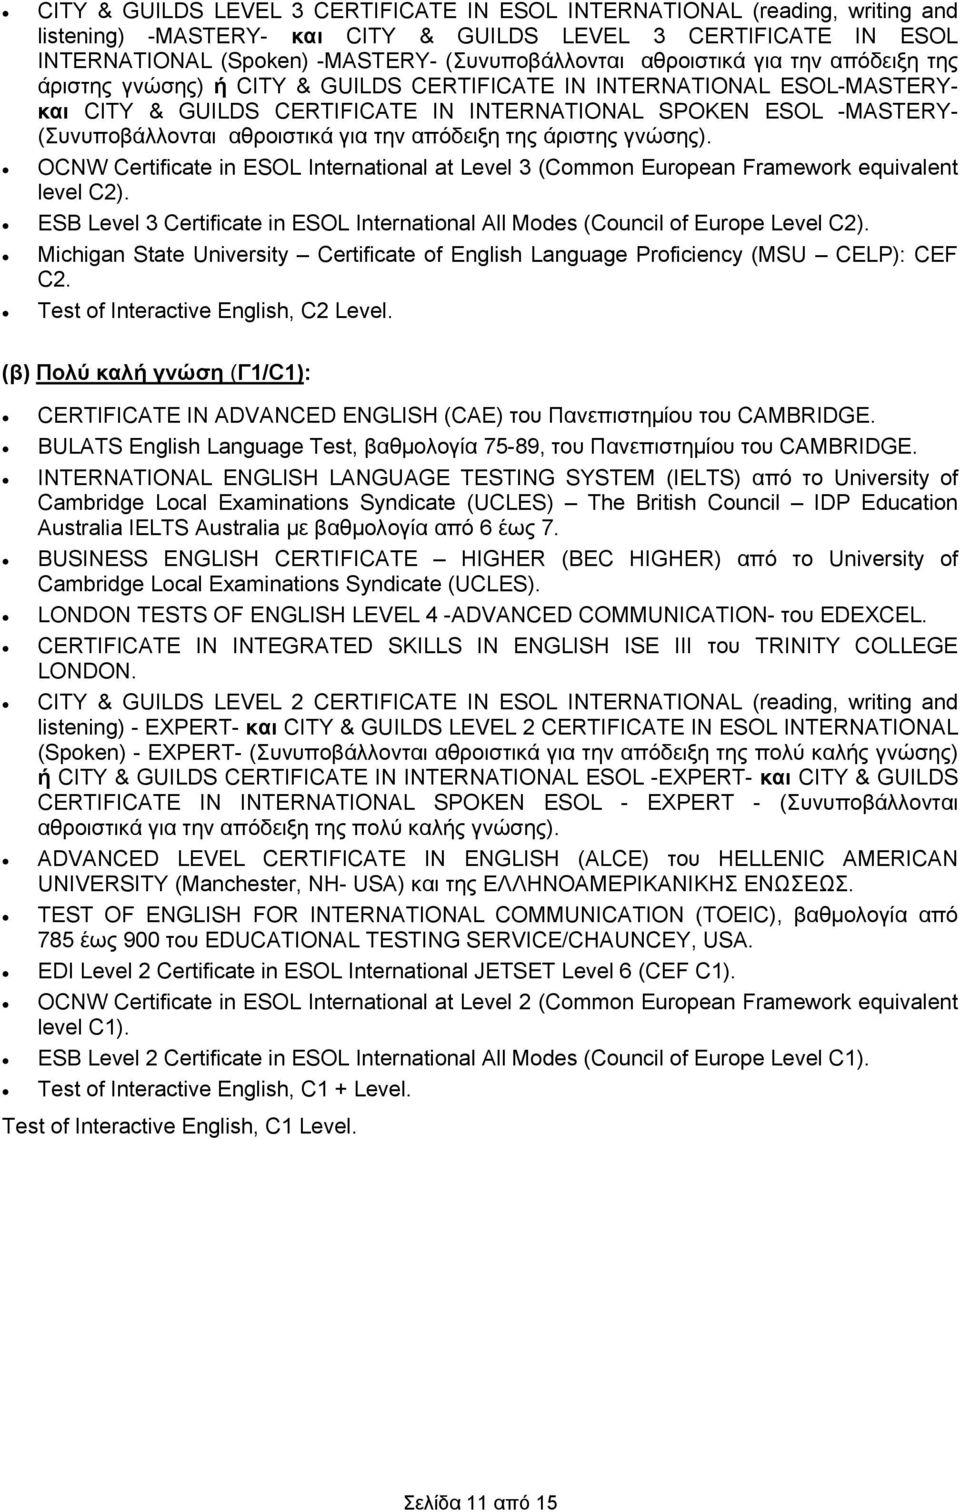 αθροιστικά για την απόδειξη της άριστης γνώσης). OCNW Certificate in ESOL International at Level 3 (Common European Framework equivalent level C2).